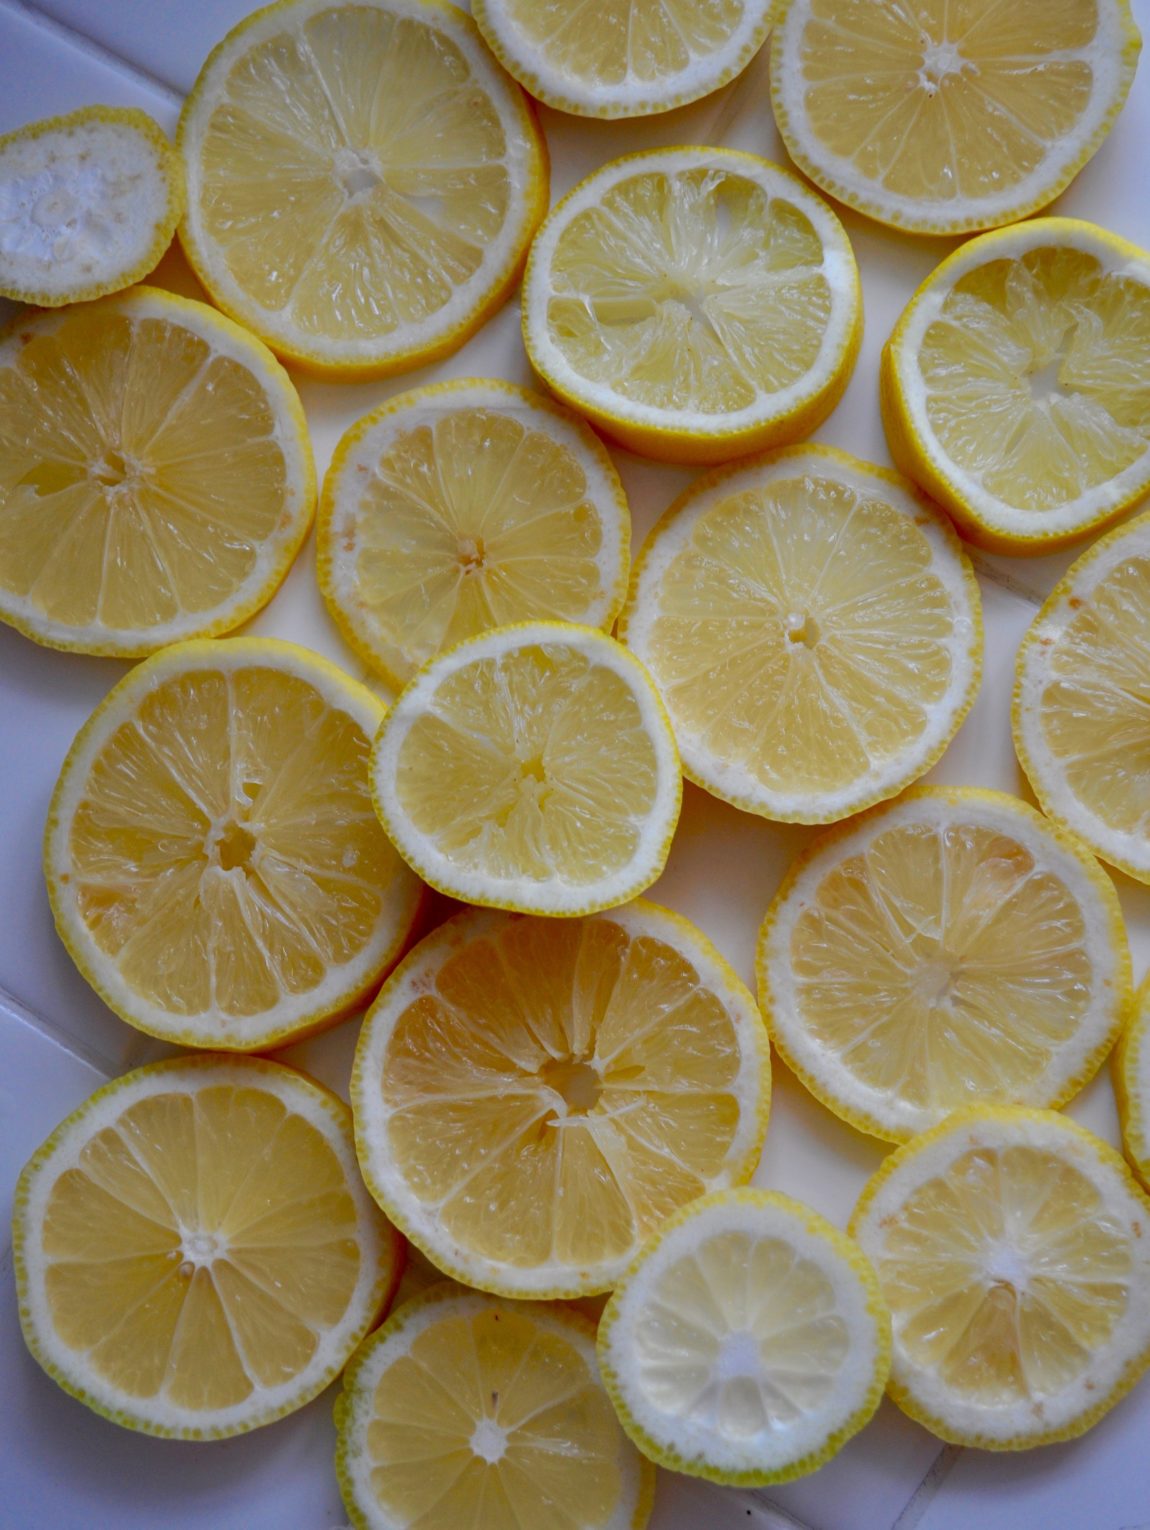 Wellness Wednesday: Love Love Lemon